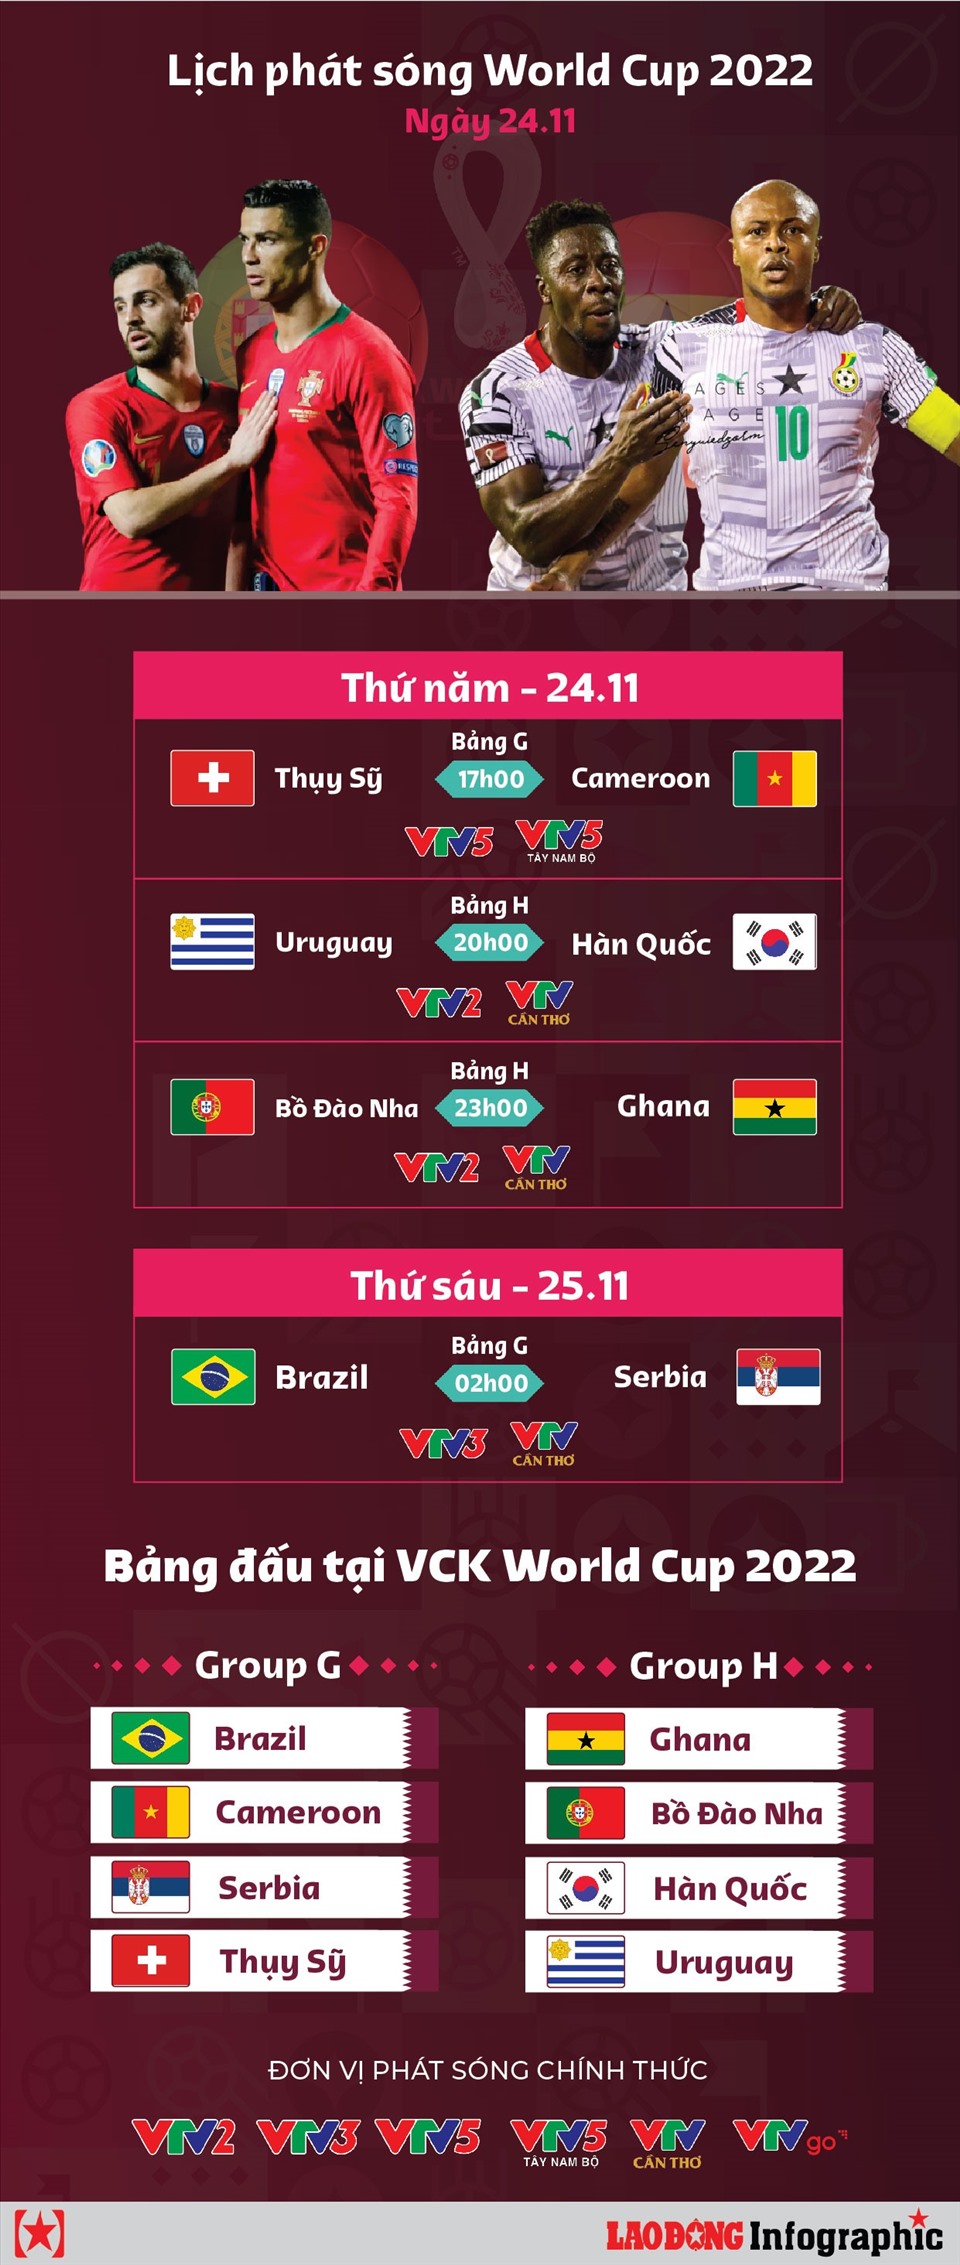 Lịch truyền hình trực tiếp World Cup 2022 ngày 24.11 Tổng liên đoàn